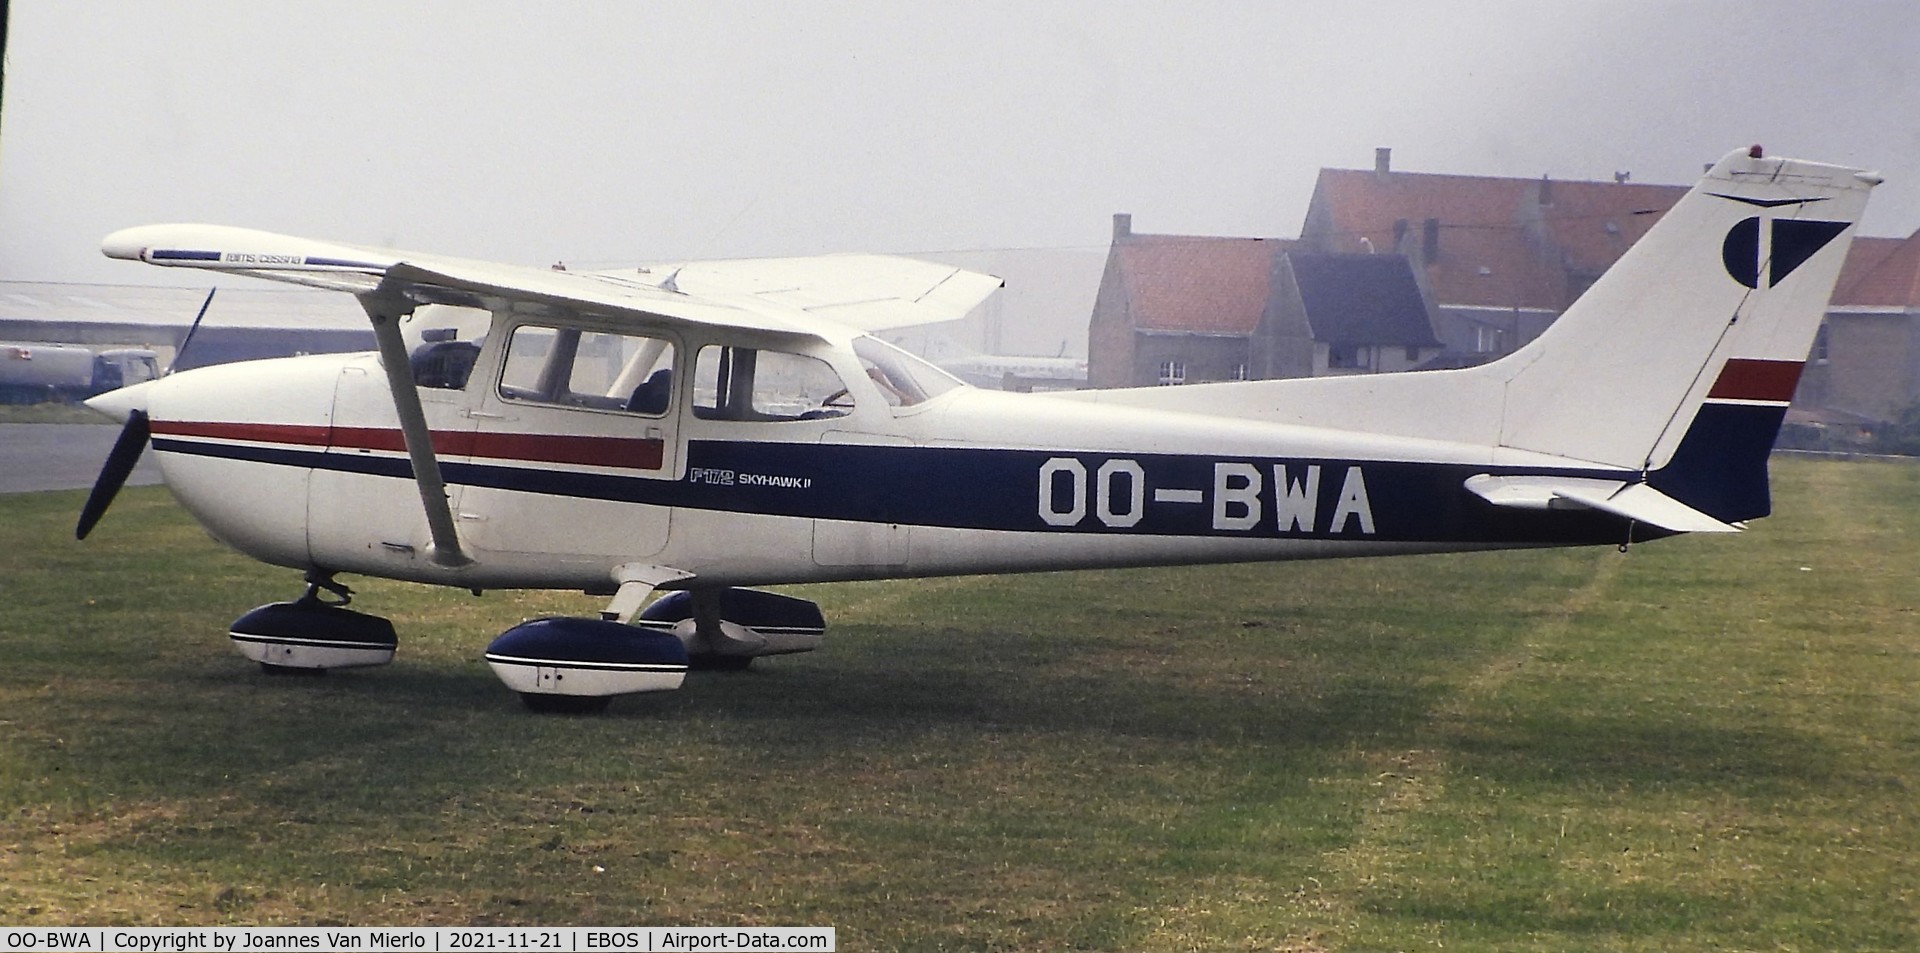 OO-BWA, 1977 Reims F172N Skyhawk C/N 1584, Slide scan